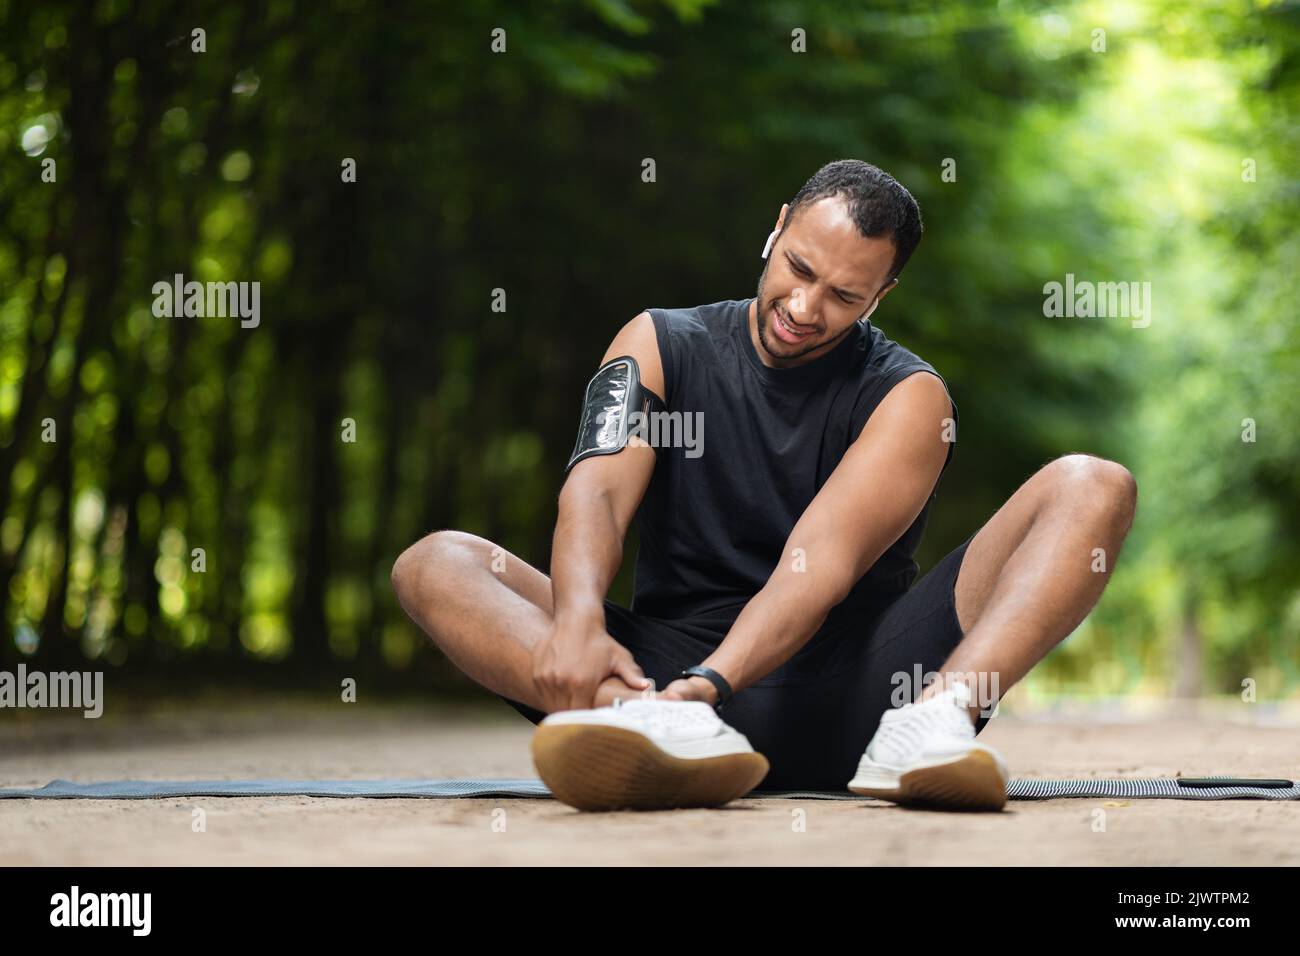 Beau sportif noir s'exerçant dans un parc public, touchant la cheville Banque D'Images